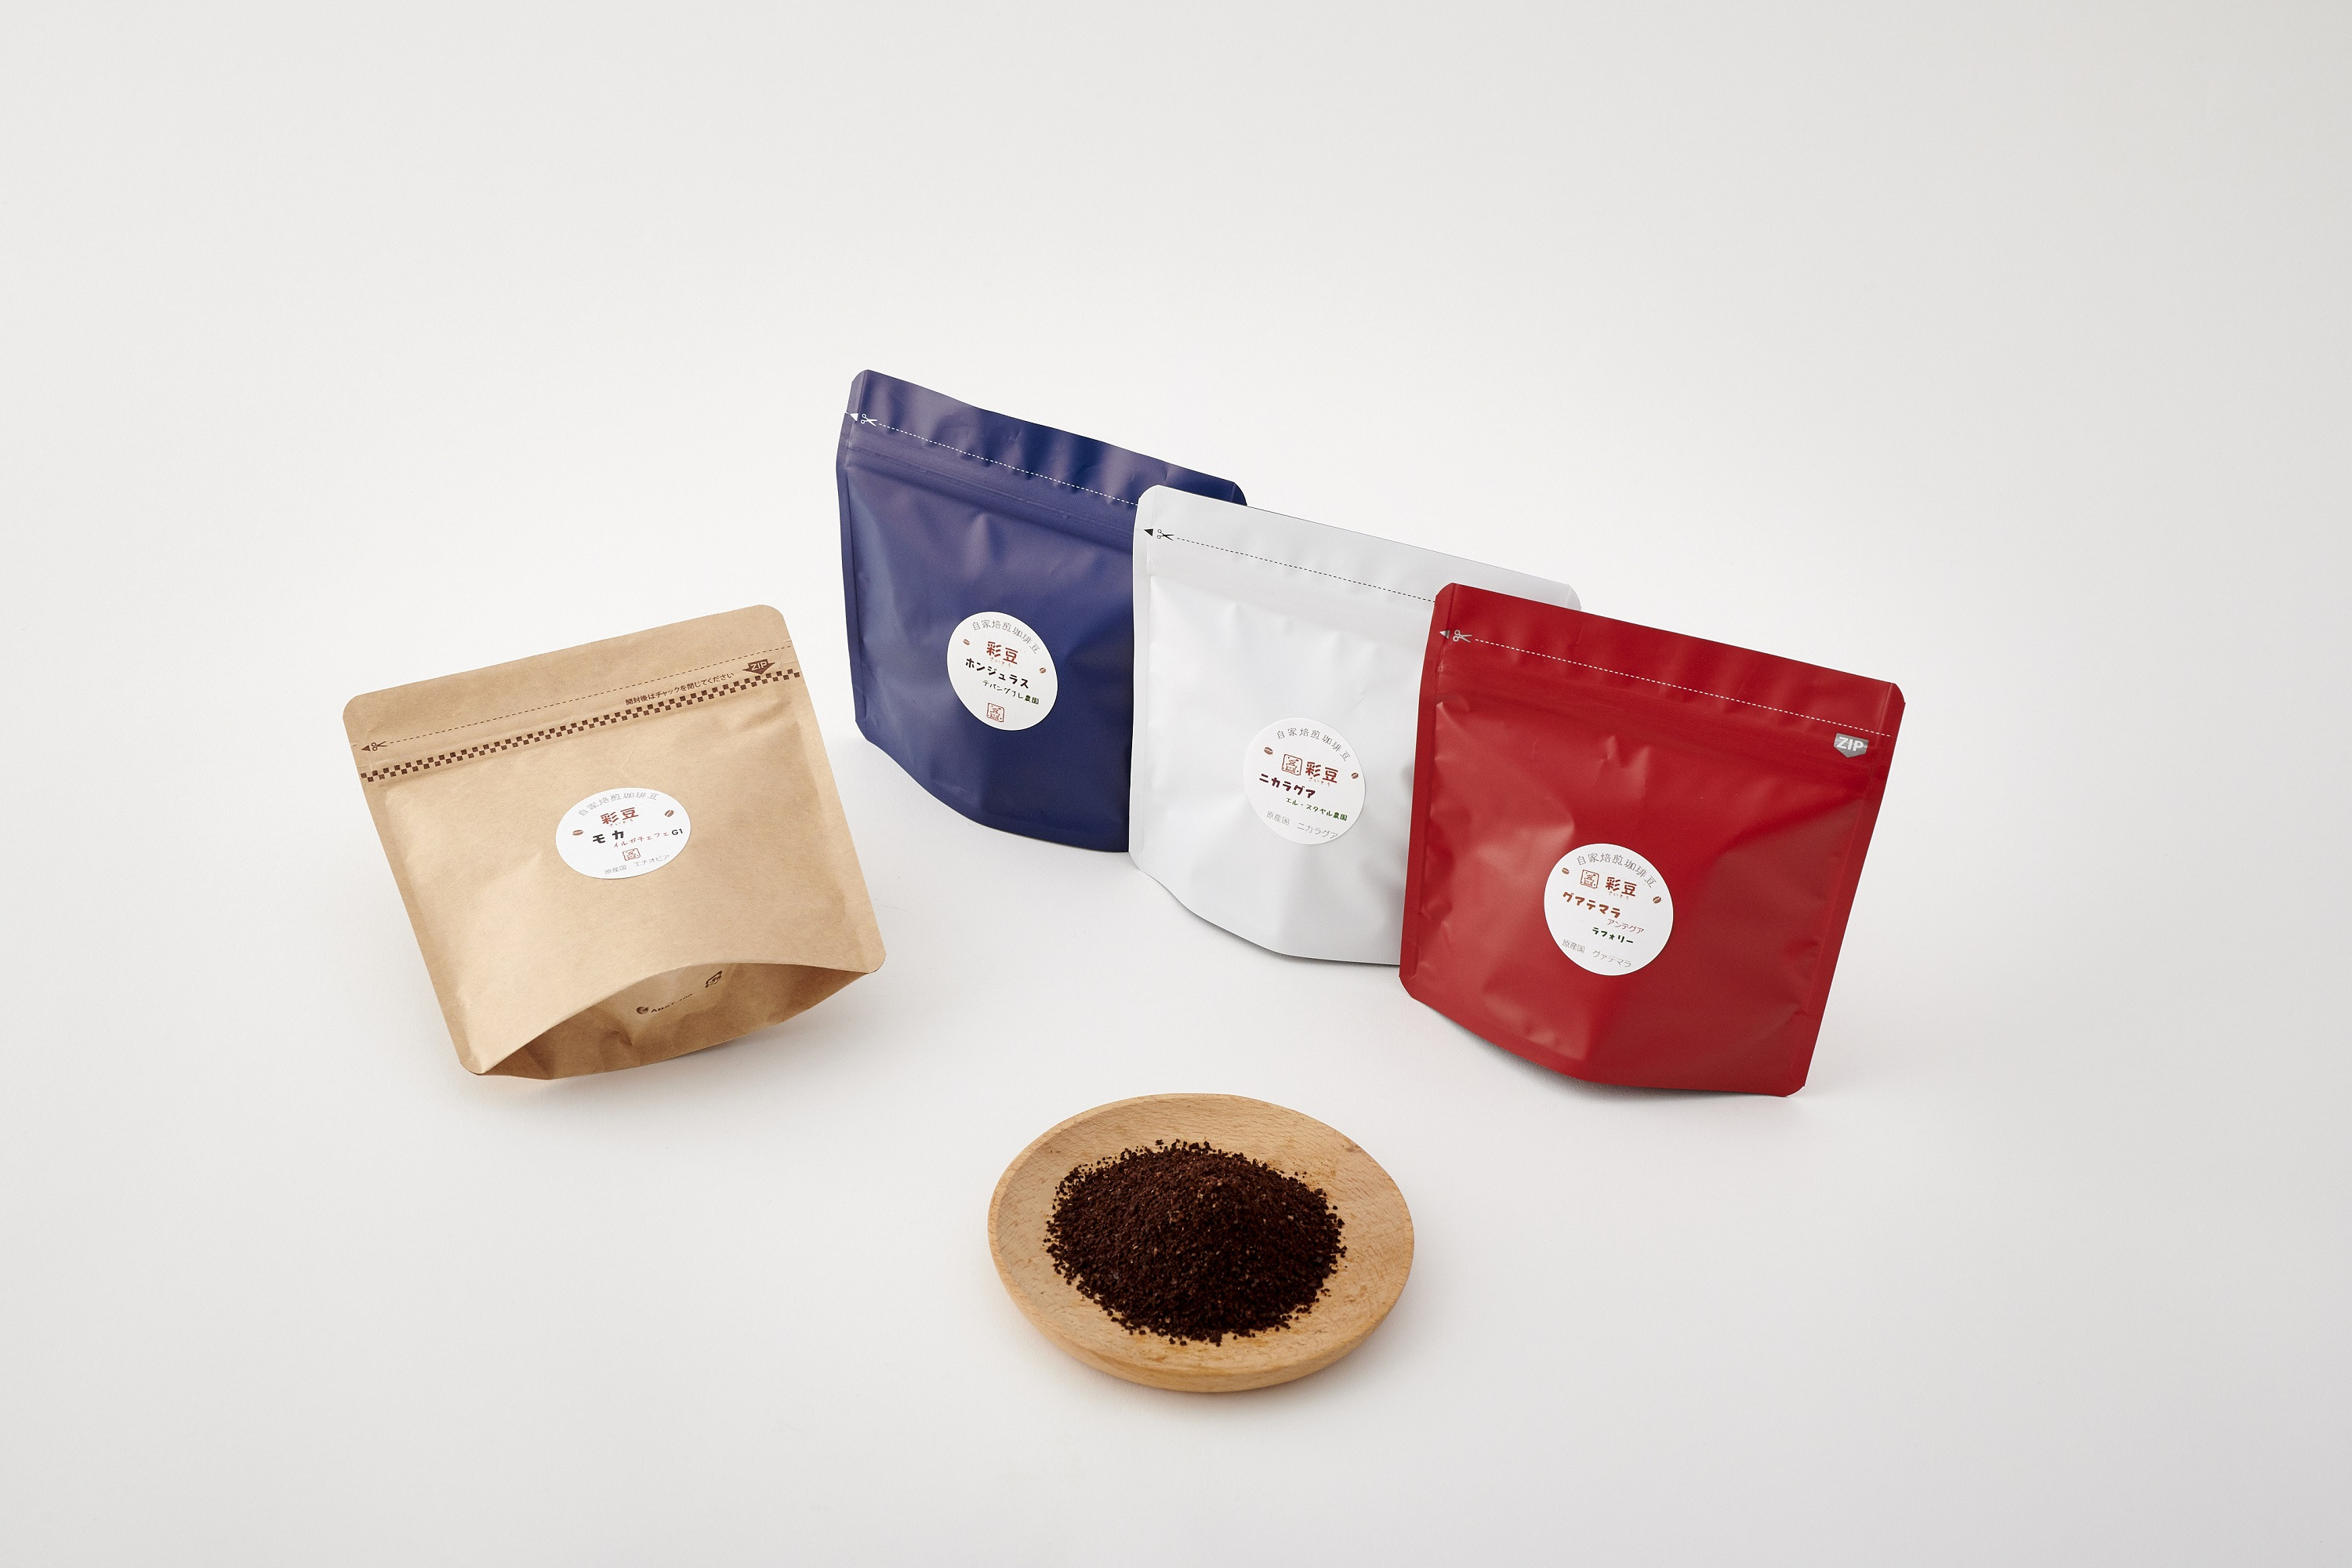 スペシャリティ自家焙煎コーヒー(粉) 深煎り 4種類詰め合わせ 400g(100g×4袋)